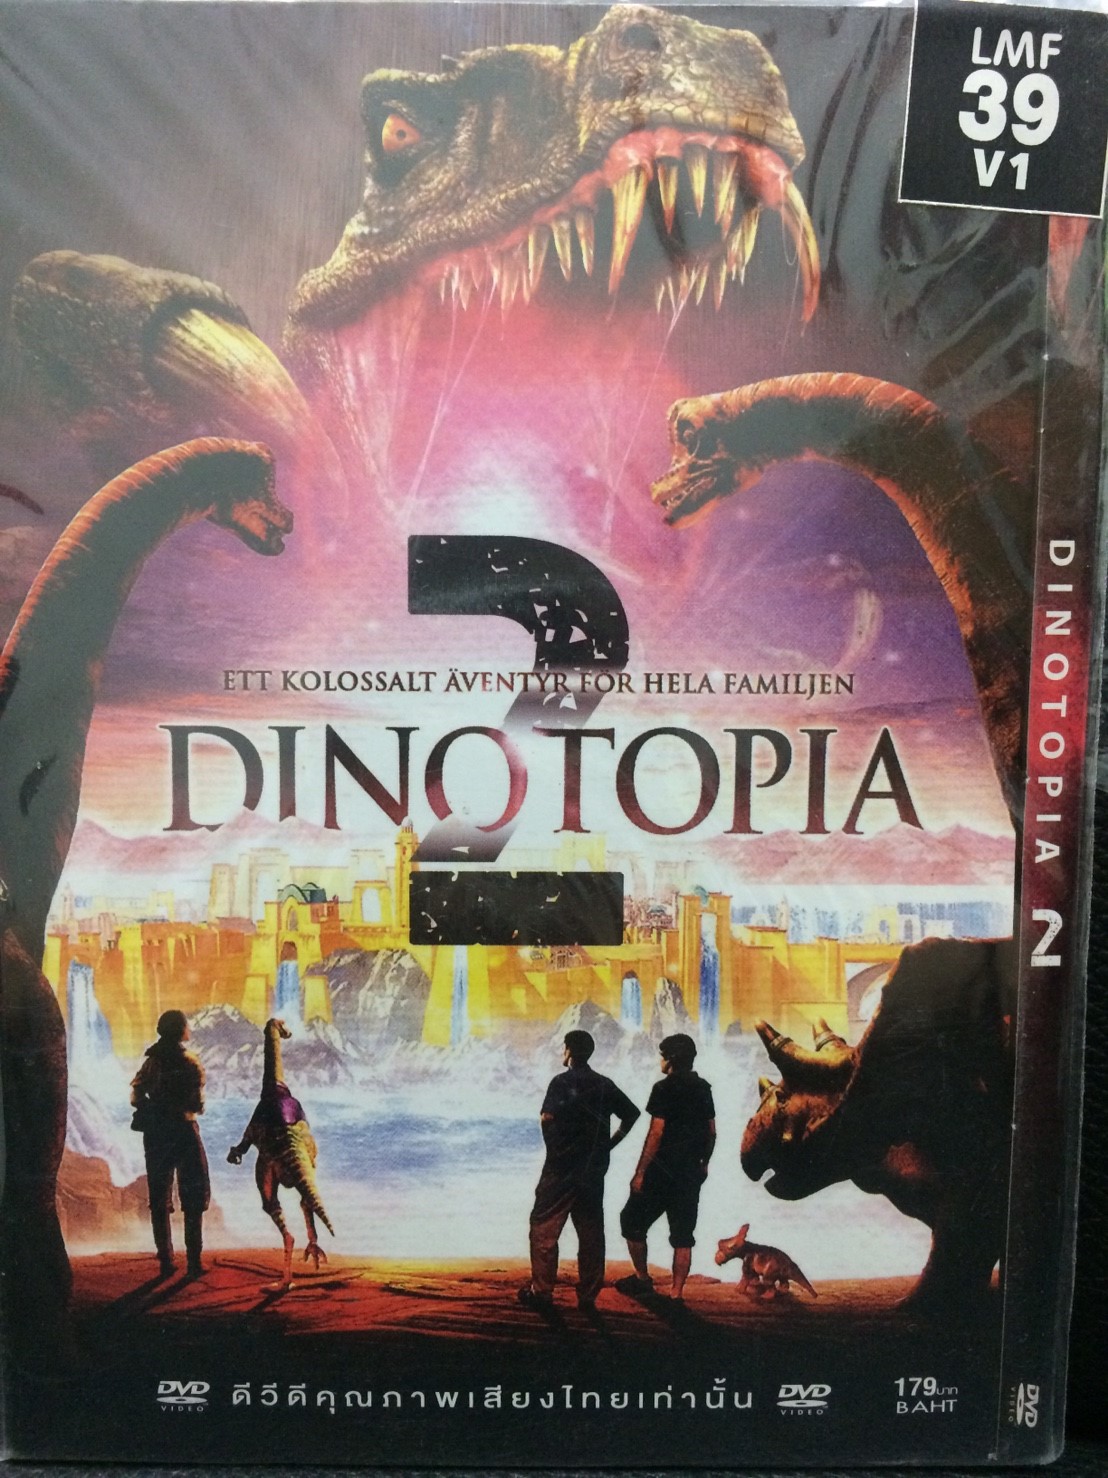 DVDหนัง DINOTOPIA 2 (SBYDVDซอง3389-DINOTOPIA2) พากย์ไทย เท่านั้น หนัง หนังซอง ราคาถูก ดีวีดี แผ่นหนัง ดูหนัง หนังดี มาสเตอร์แท้ รวมหนัง STARMART